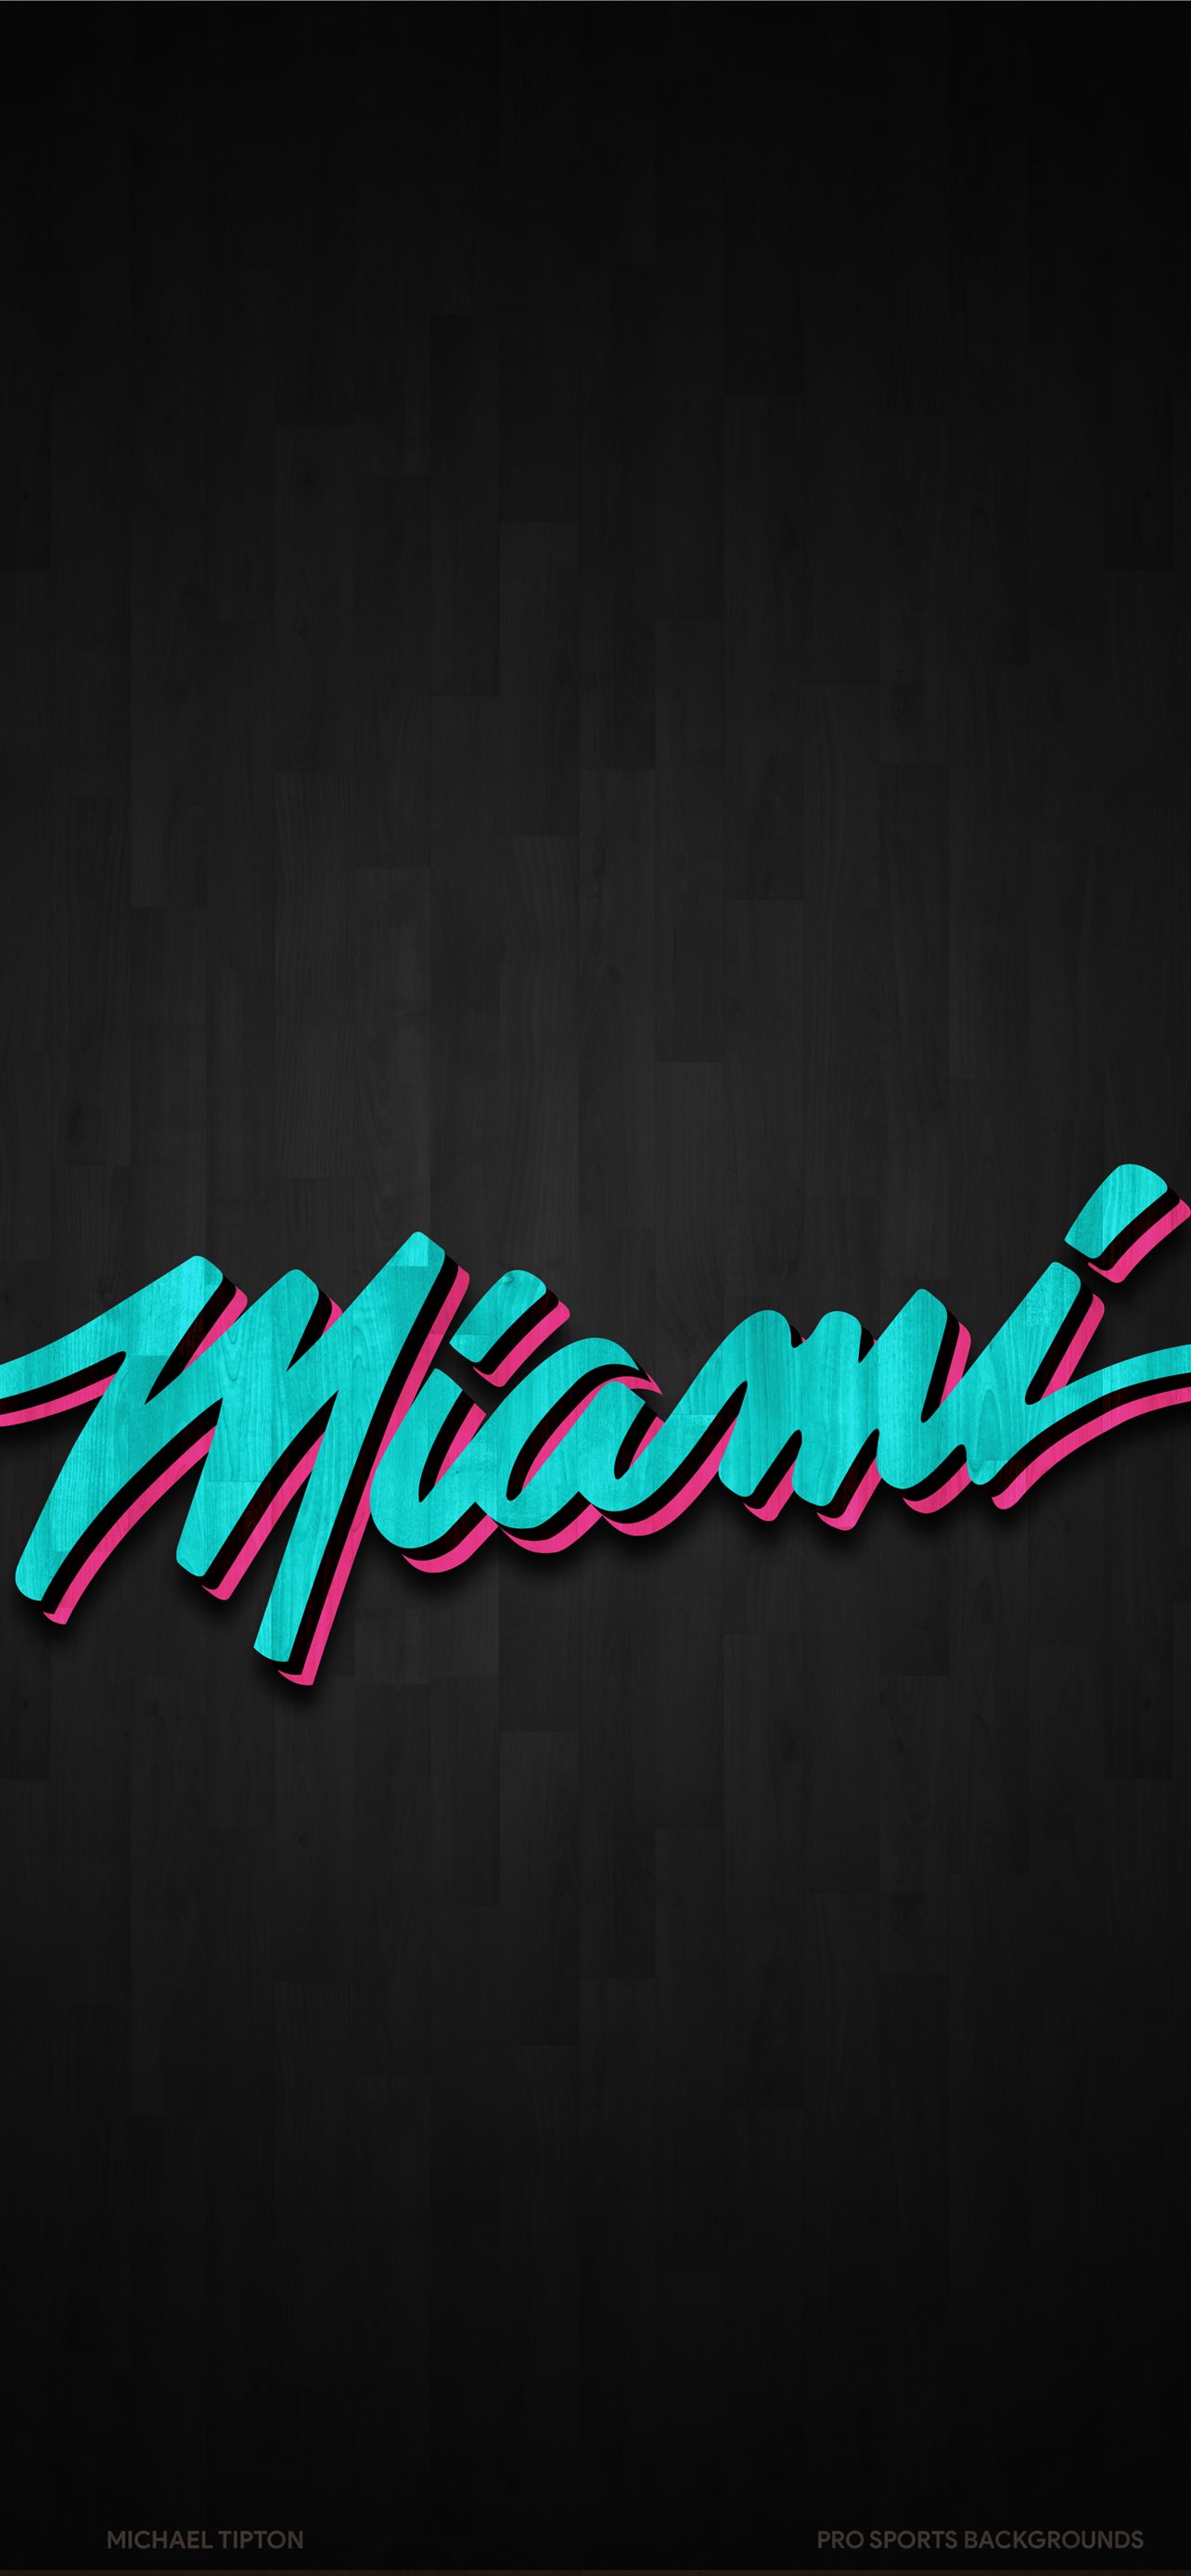 Miami Heat Wallpaper by rhurst on DeviantArt